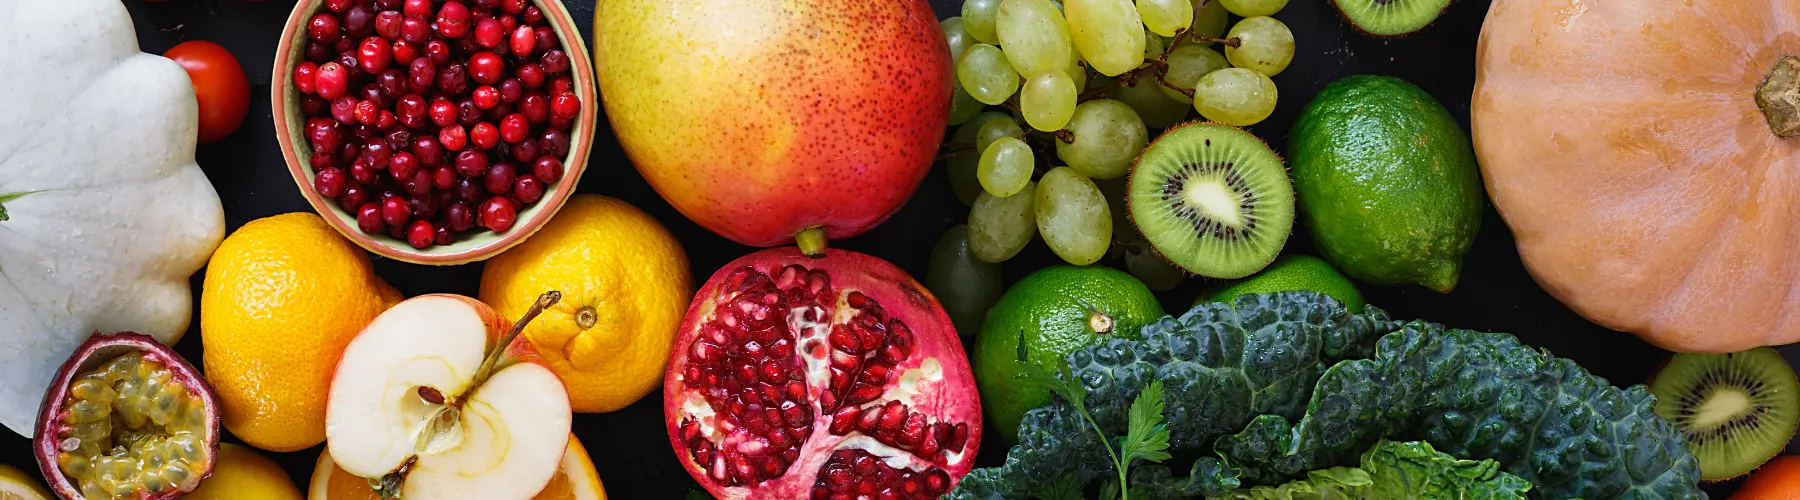 fruit and veg banner